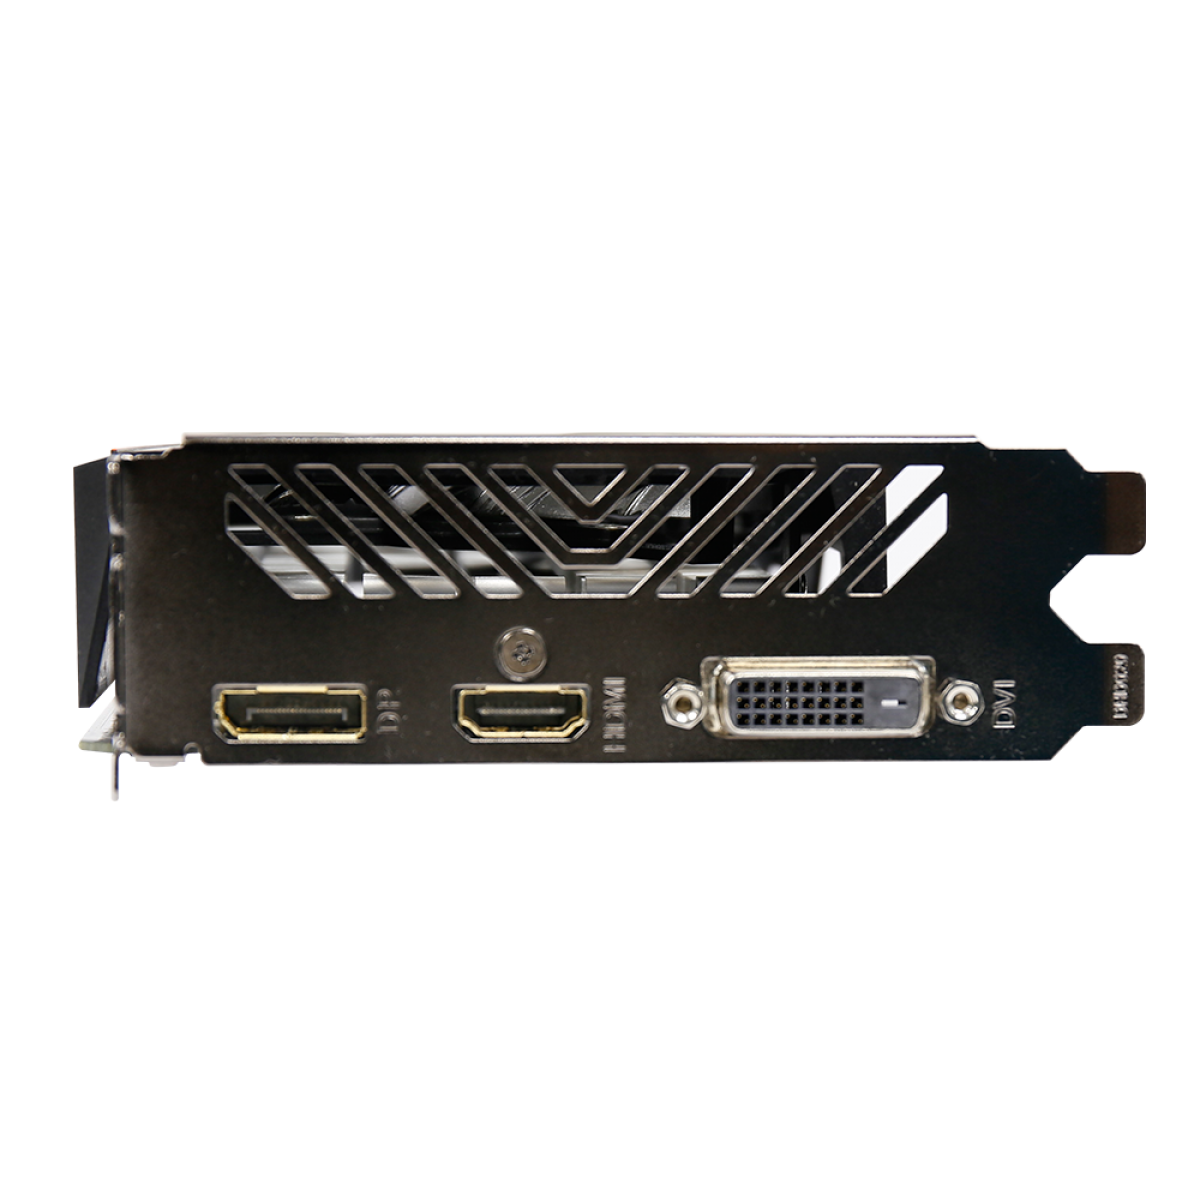 Placa de Vídeo Gigabyte GeForce GTX 1050 OC, 2GB, GDDR5, 128bit, GV-N1050OC-2GD